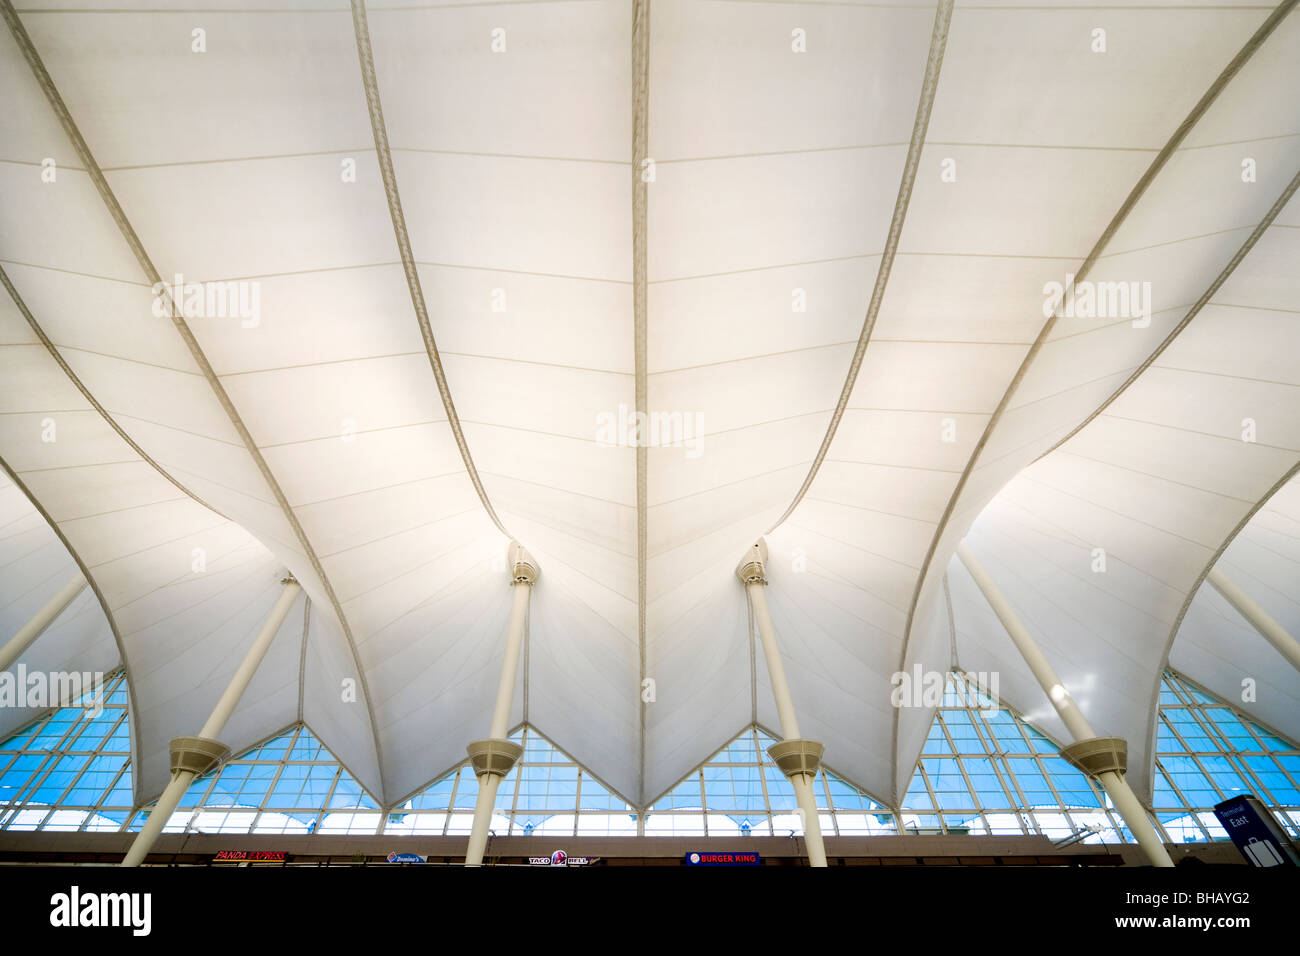 Denver Airport zeltartige Dachkonstruktion. Zugfestigkeit Glasfasergewebe. Internationalen Jeppesen terminal Interieur. VEREINIGTE STAATEN USA Stockfoto